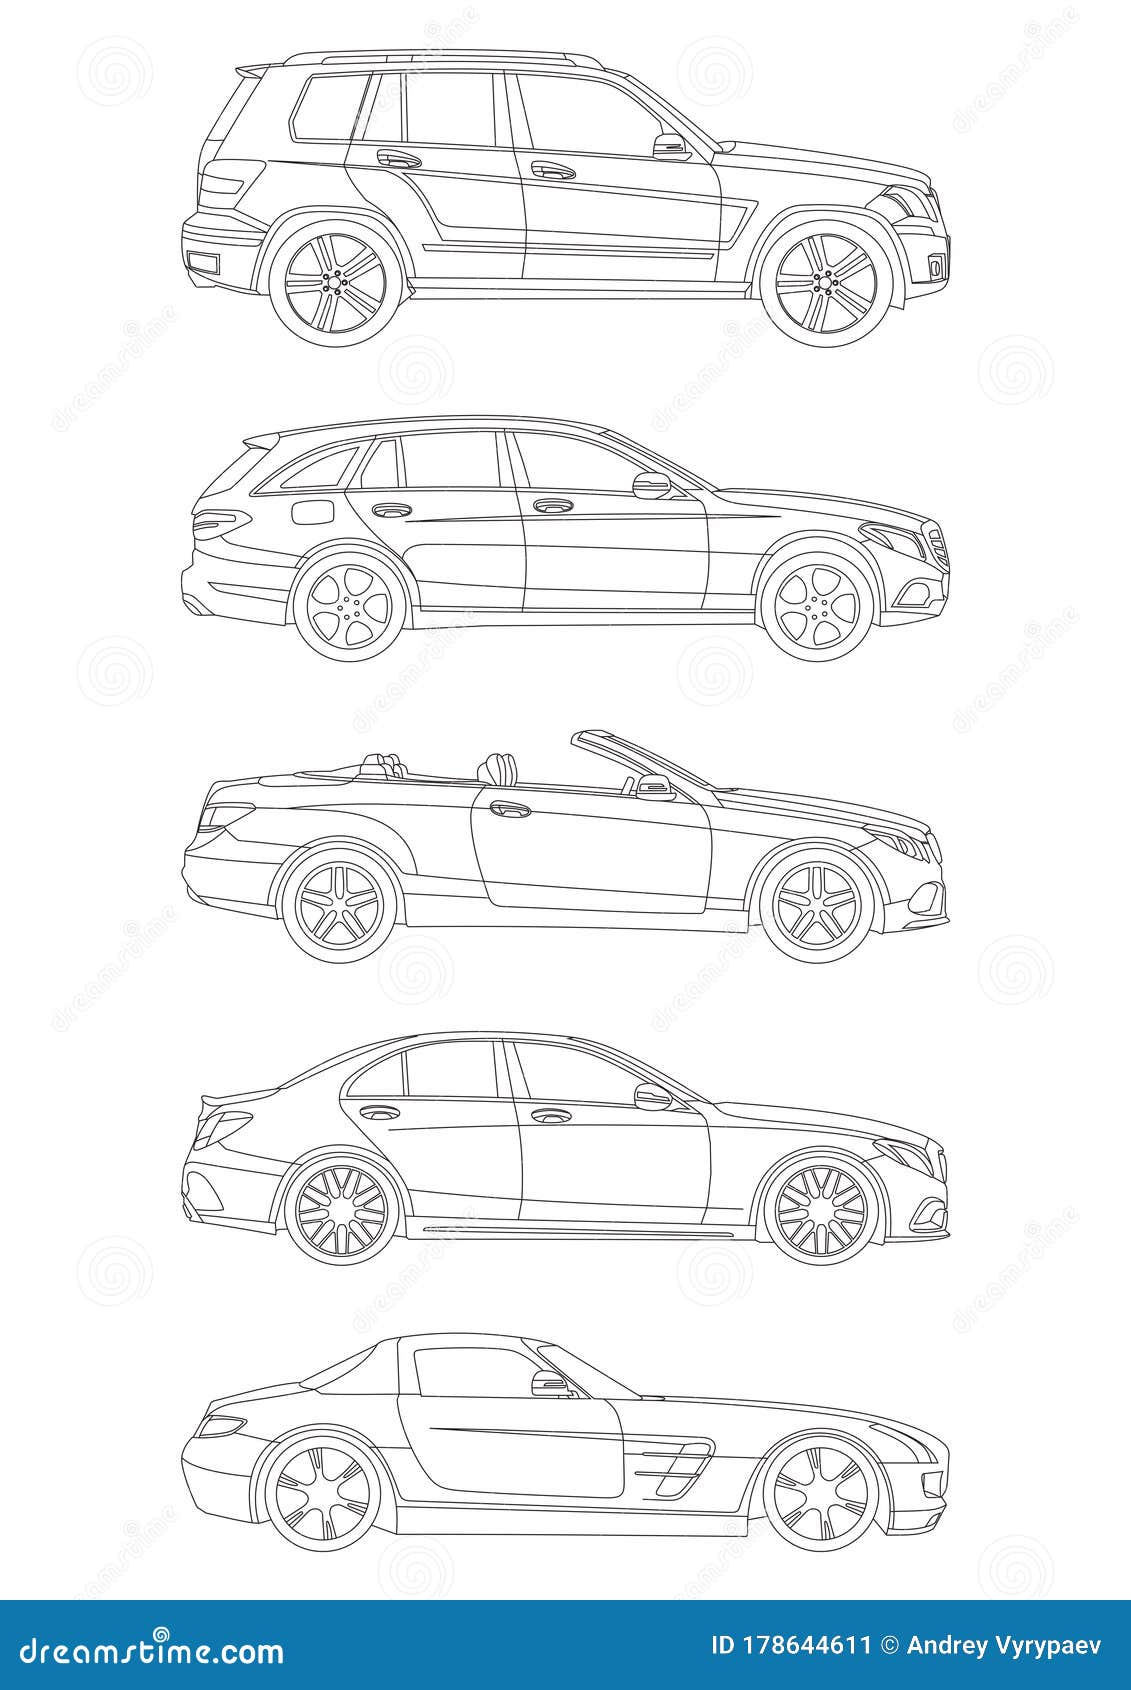 MercedesBenz SClass  Design Sketch  Car Body Design